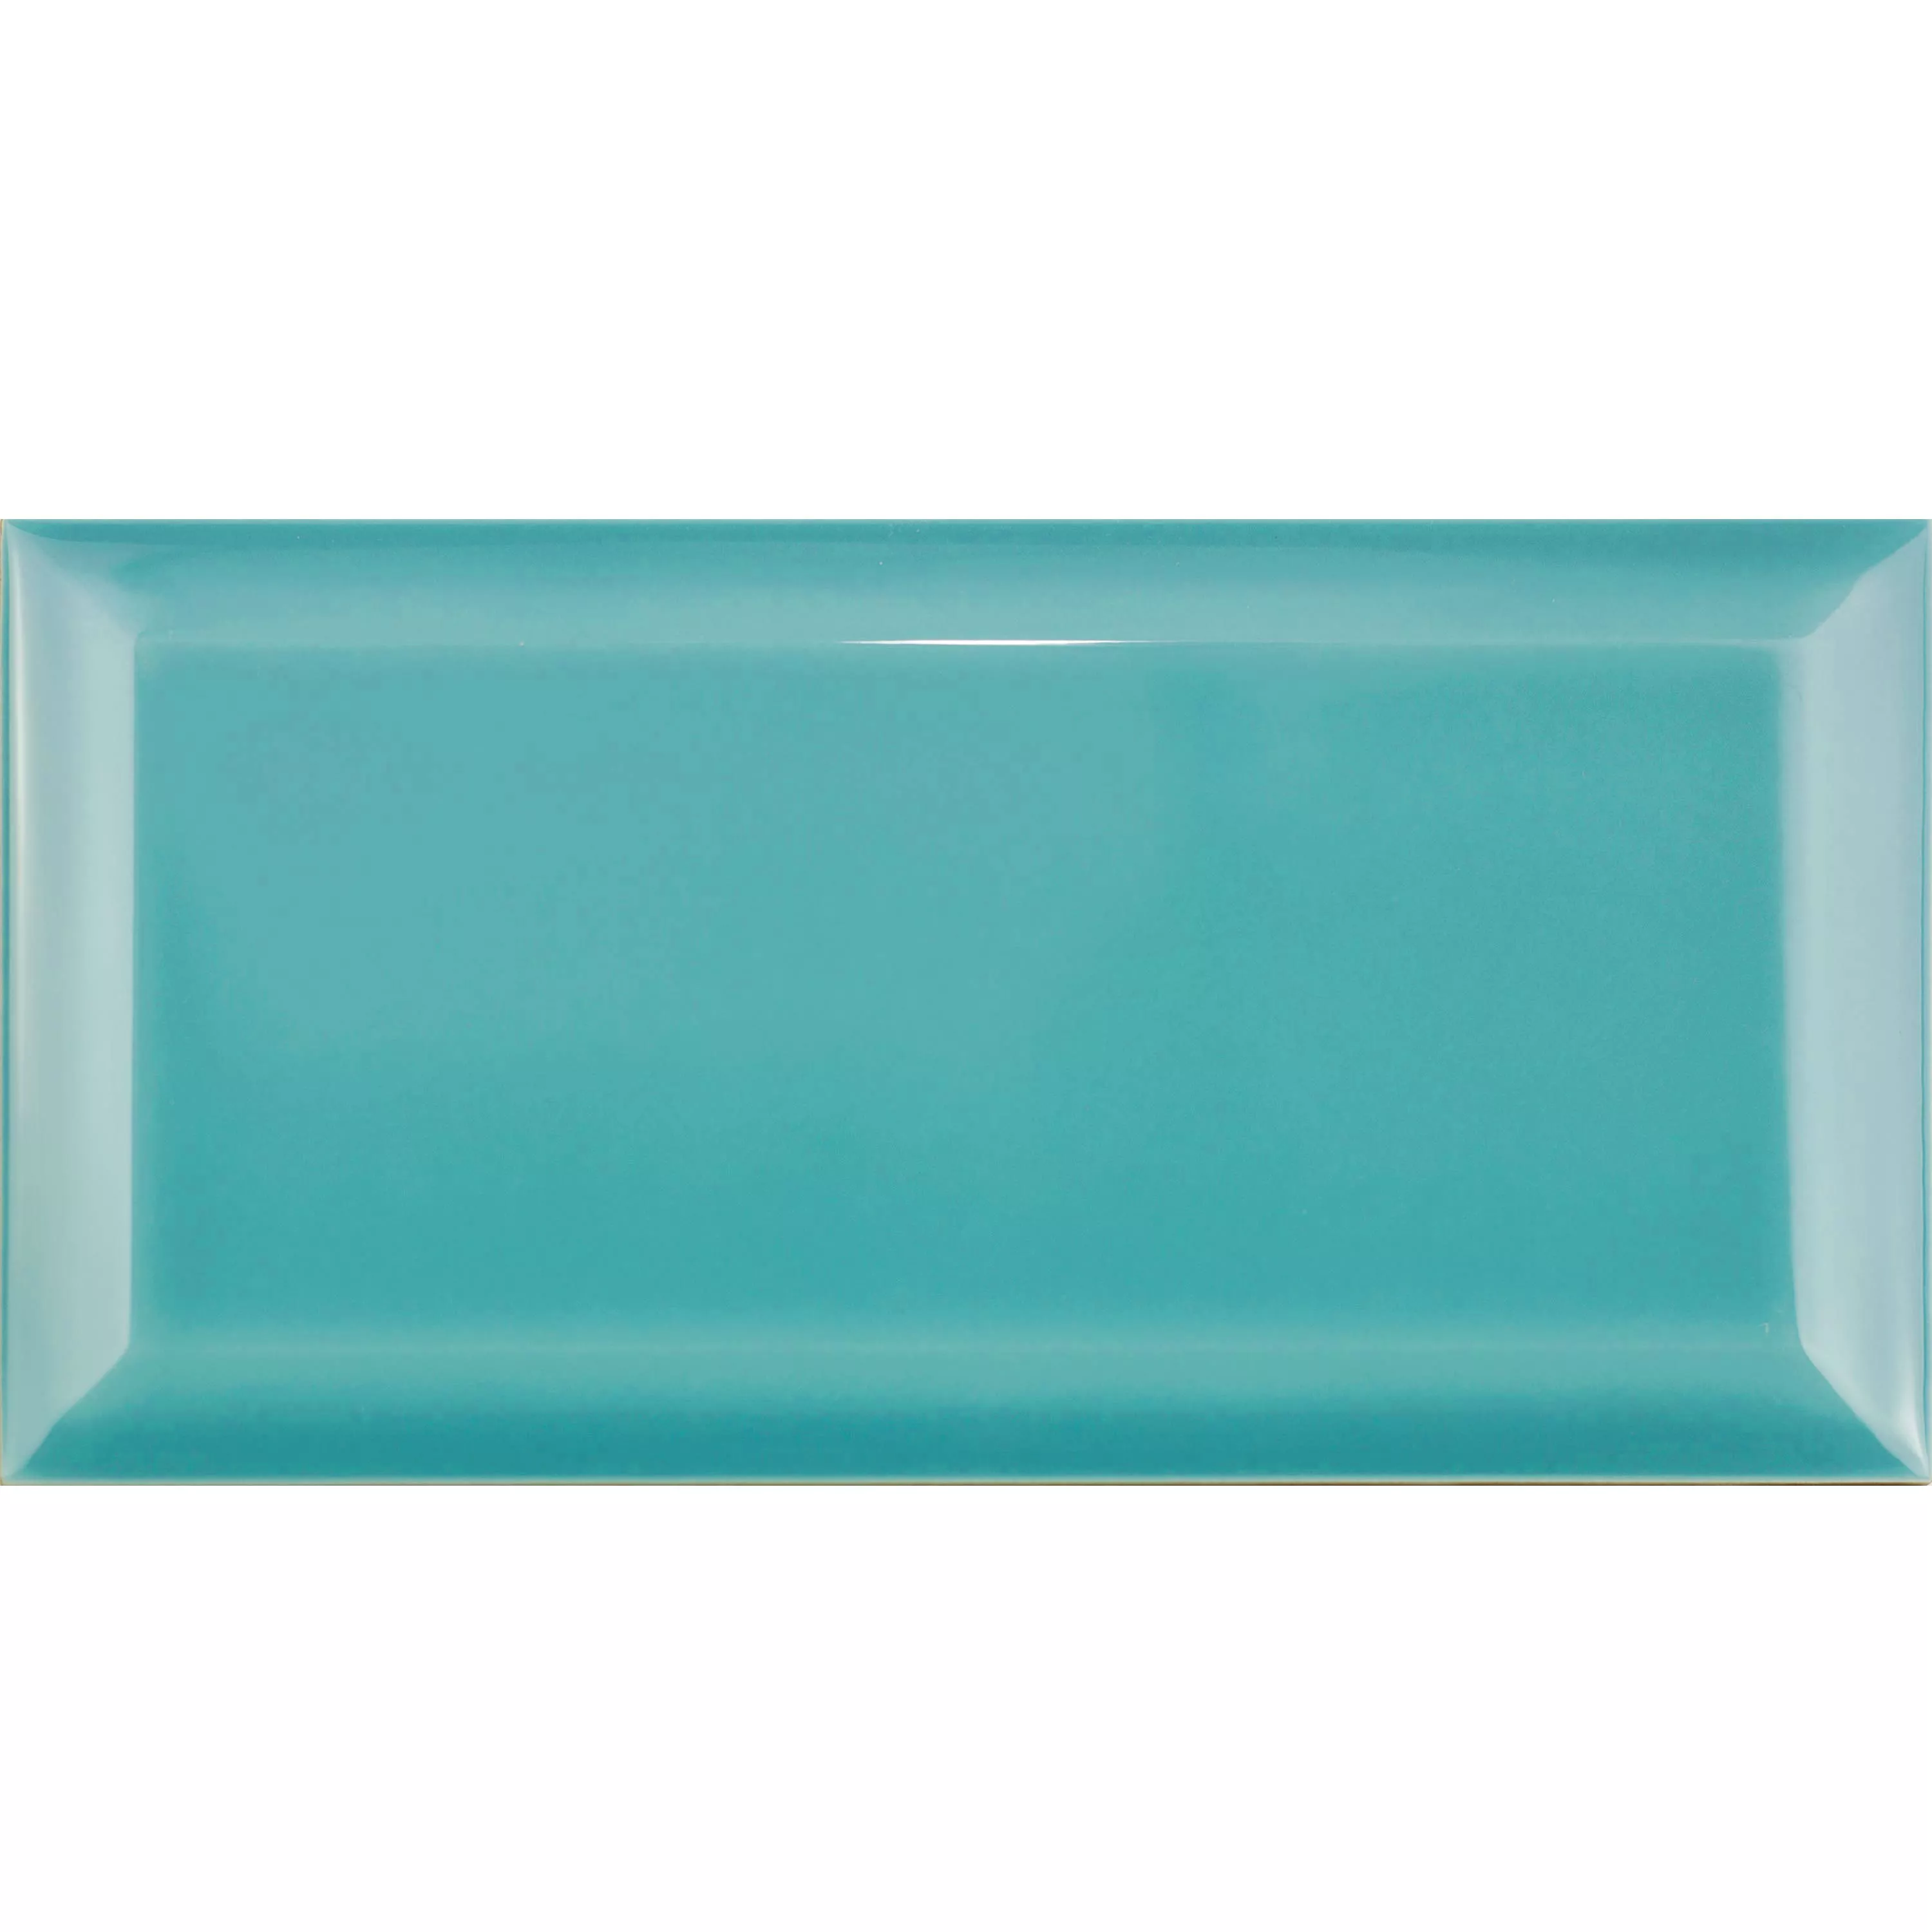 Model Metro Plăci Ceramice Pentru Pereti Brussel Fațetă 10x20x0,7cm Azul Turquesa